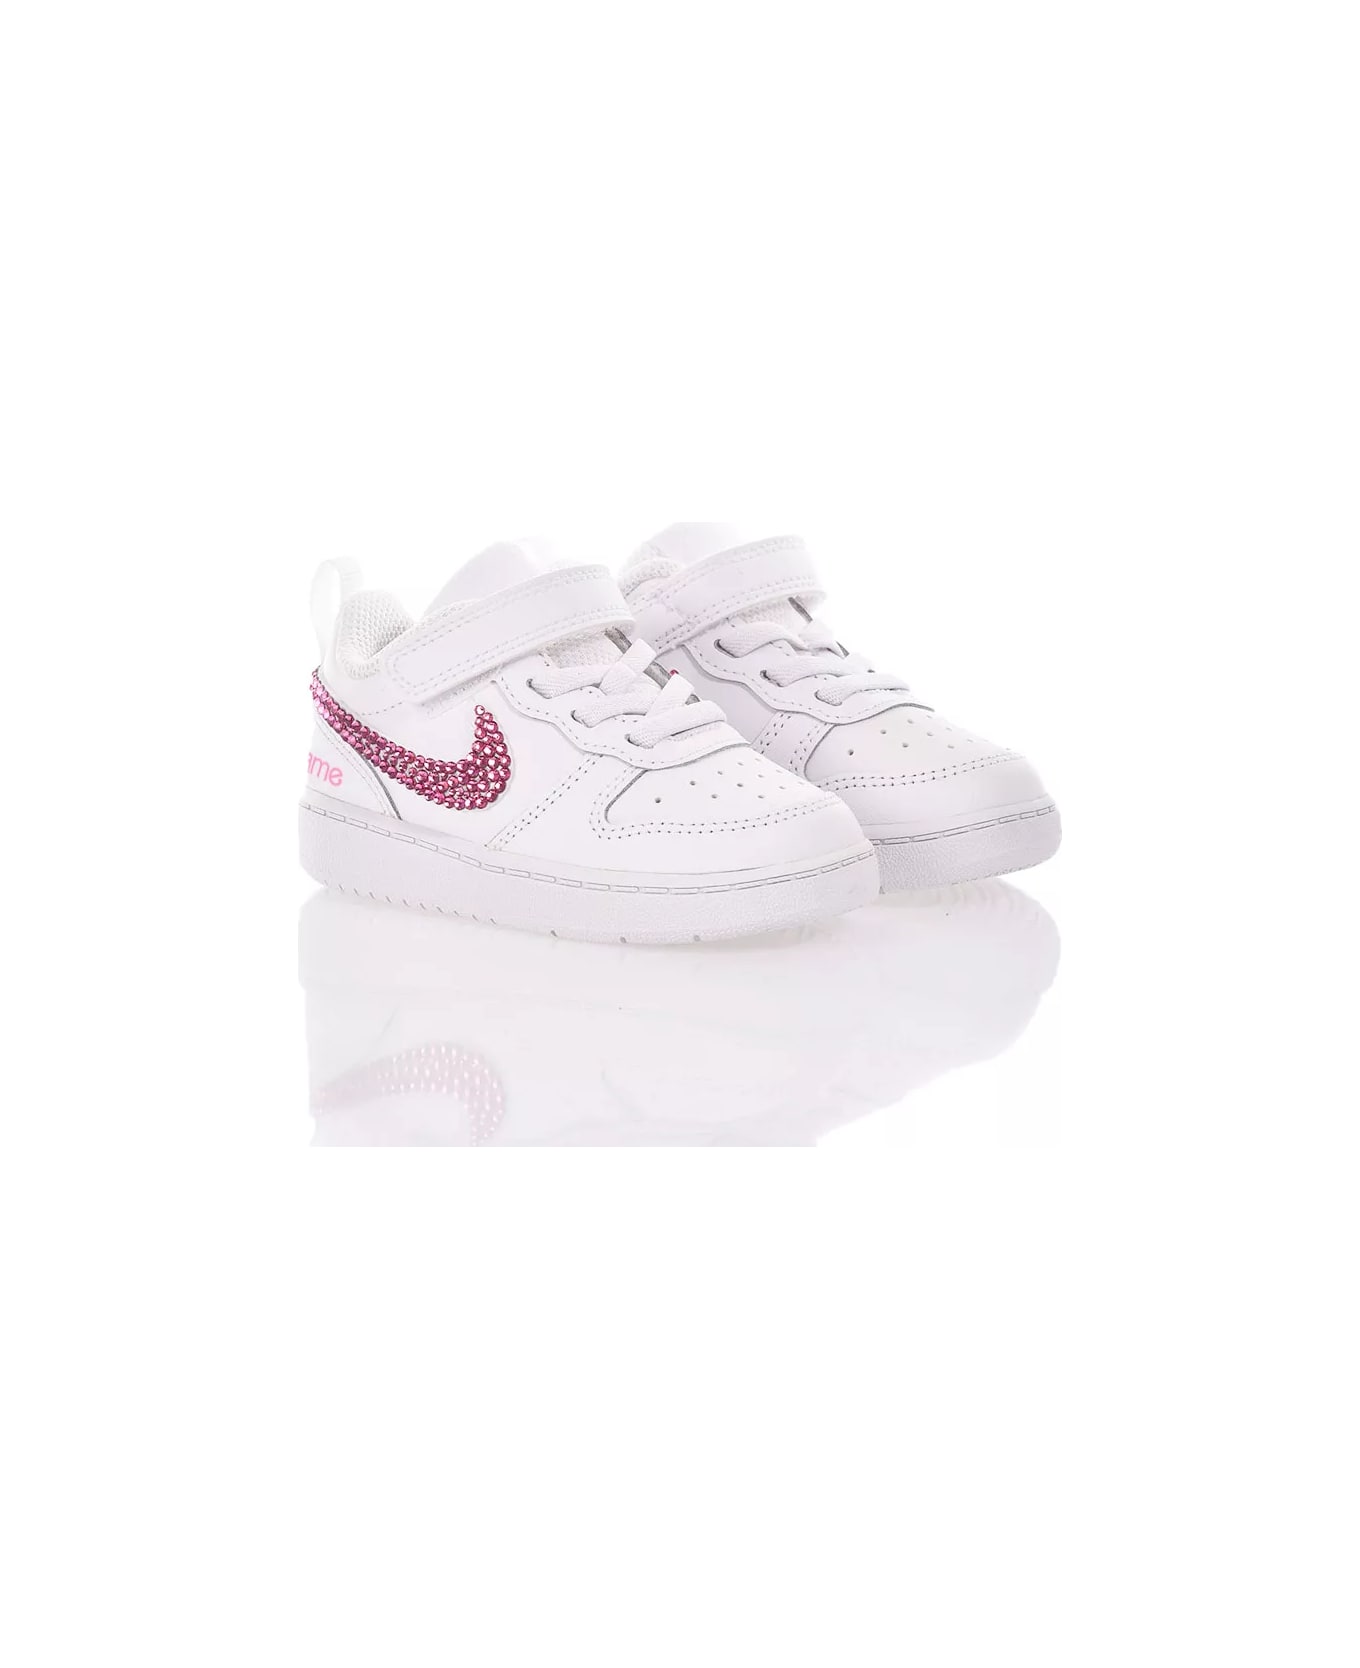 Mimanera Nike Baby Pink You Custom シューズ